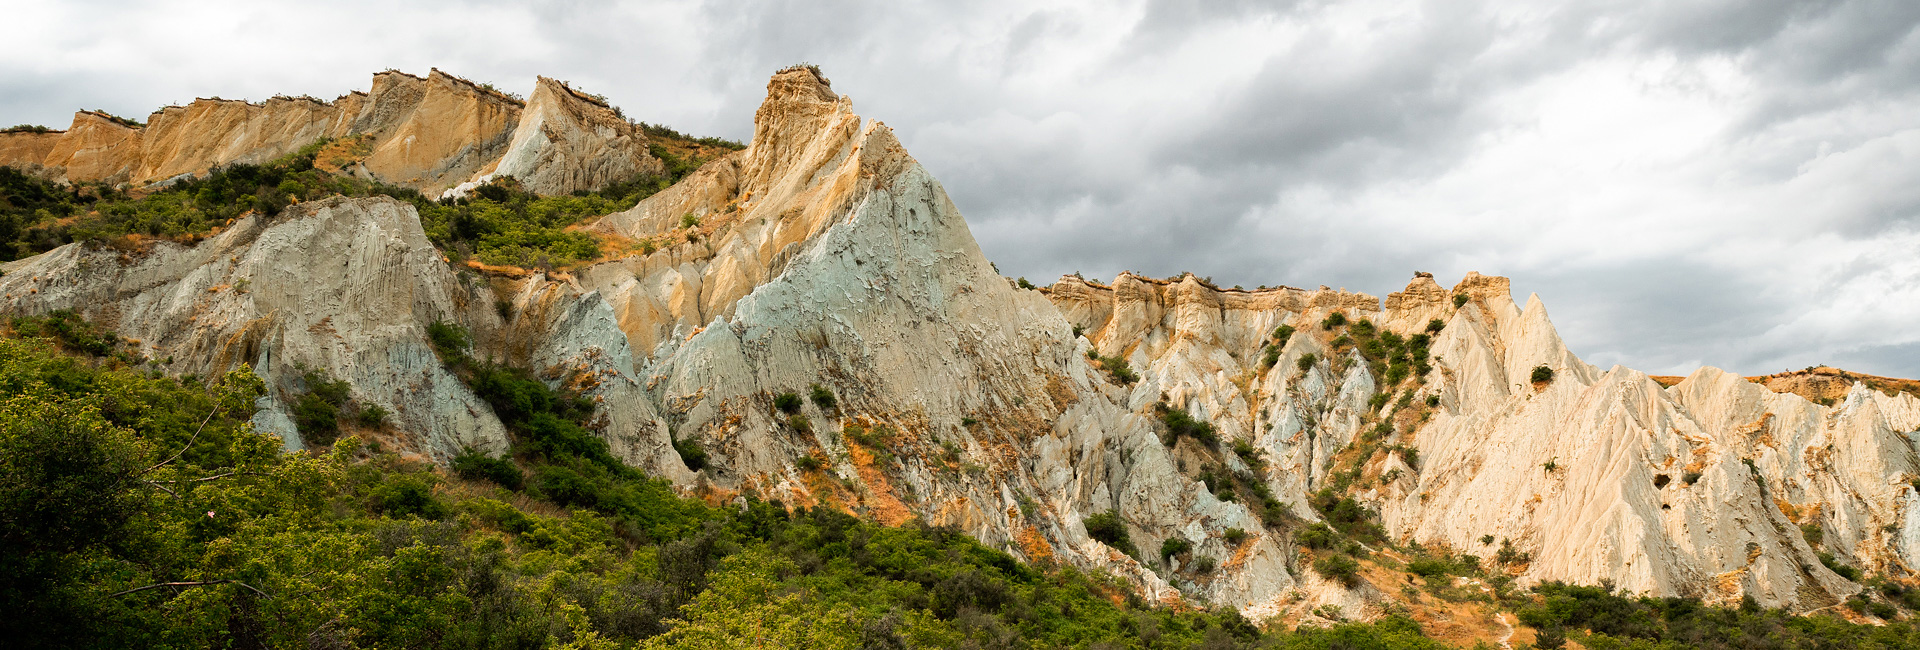 Clay Cliffs Scenic Area, Omarama